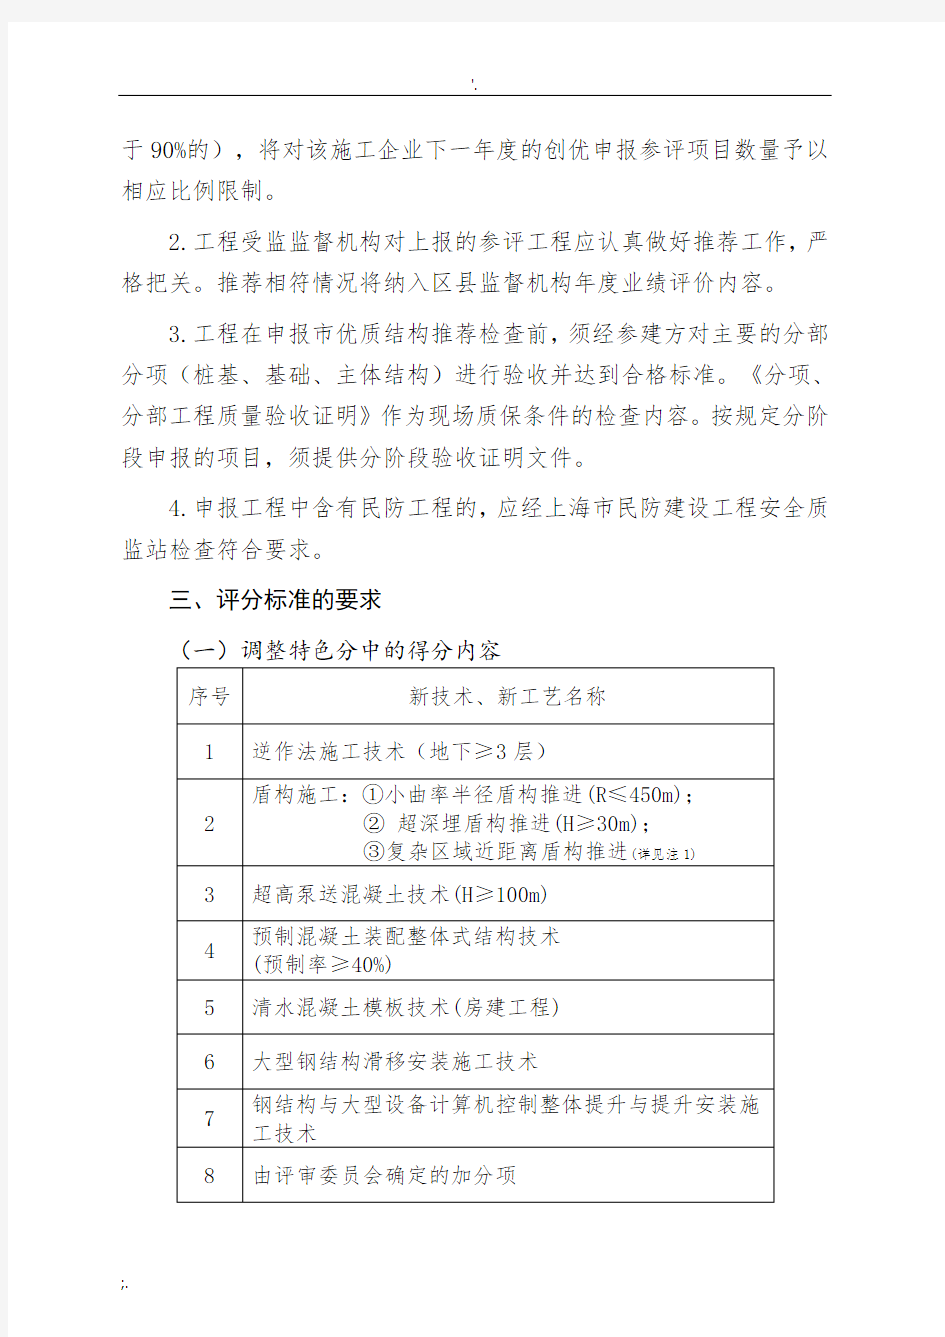 上海市优质工程(结构工程)推荐检查要求调整事项